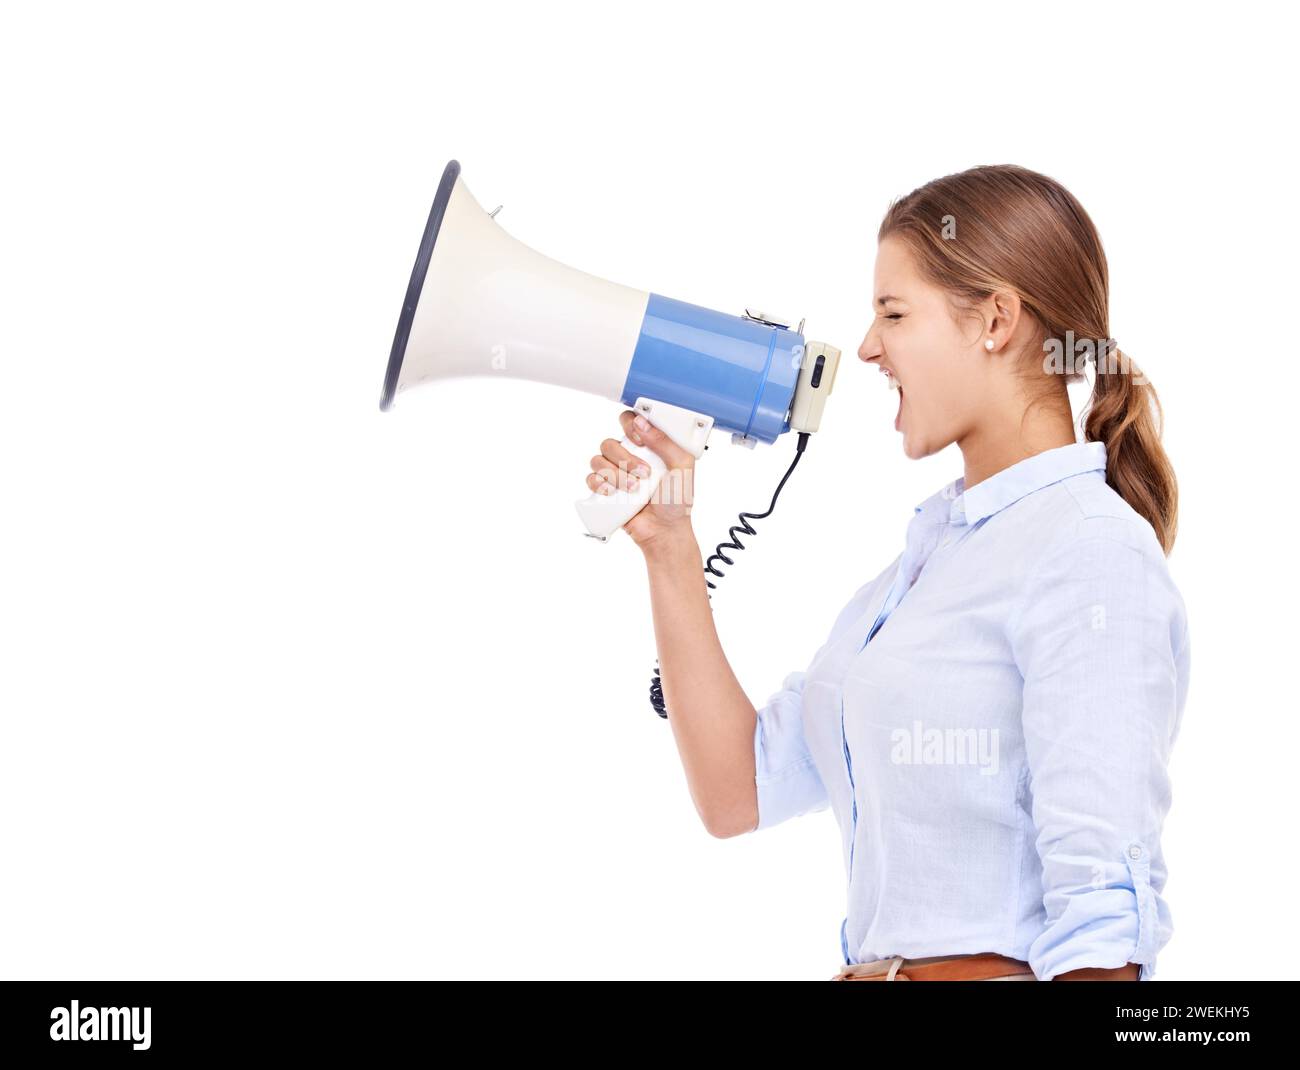 Megaphon, Ankündigung und Geschäftsfrau, die bei einer Firmenveranstaltung im Studio auf weißem Hintergrund schreien. Protest, Information und Lautsprecher mit Stockfoto